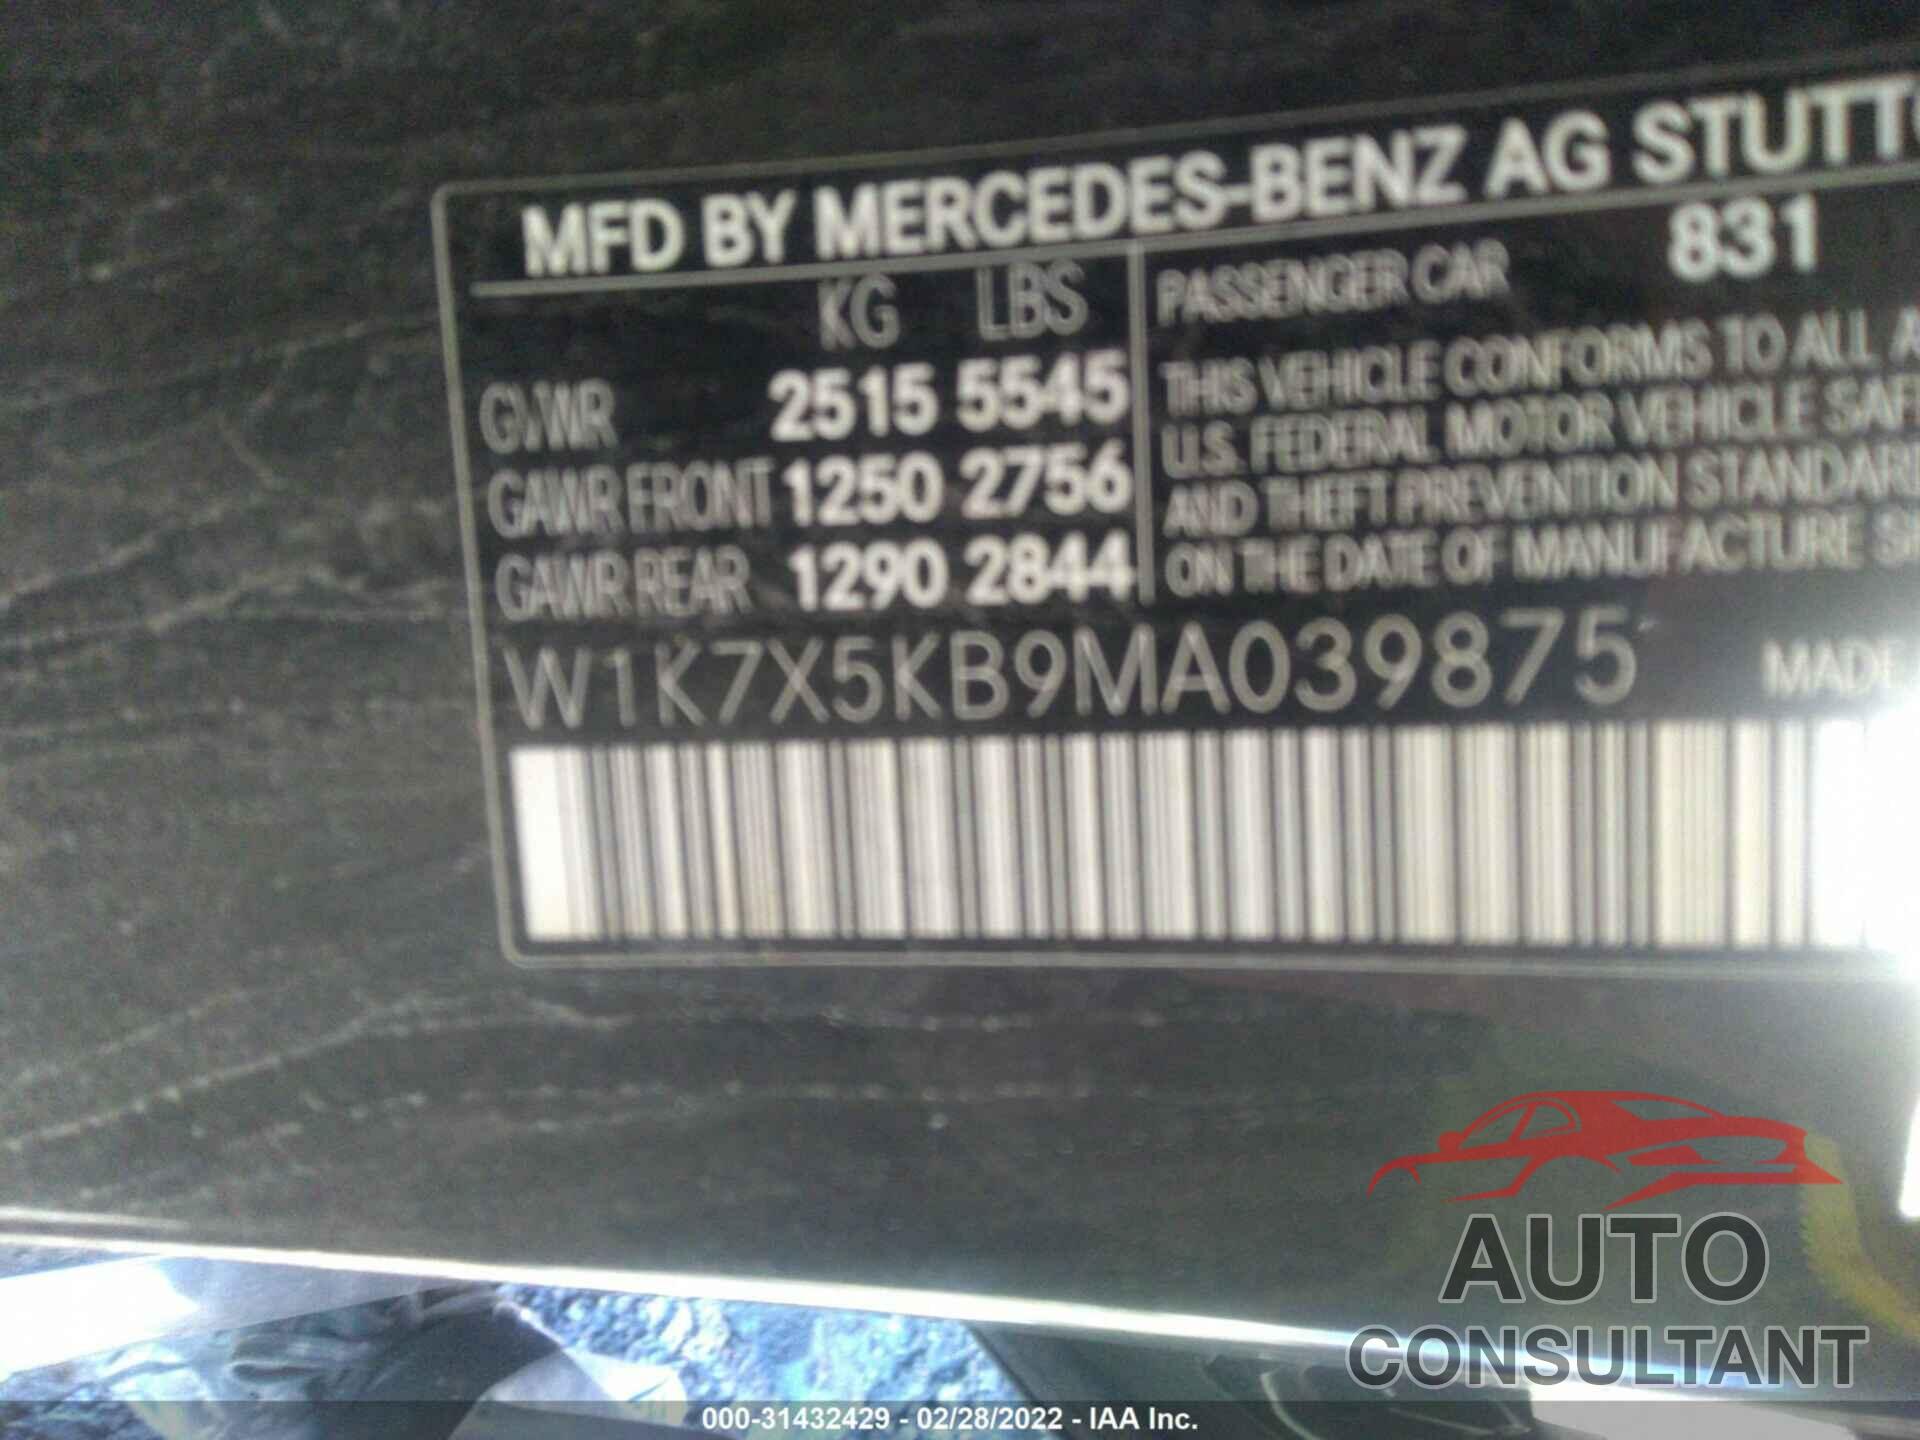 MERCEDES-BENZ AMG GT 2021 - W1K7X5KB9MA039875